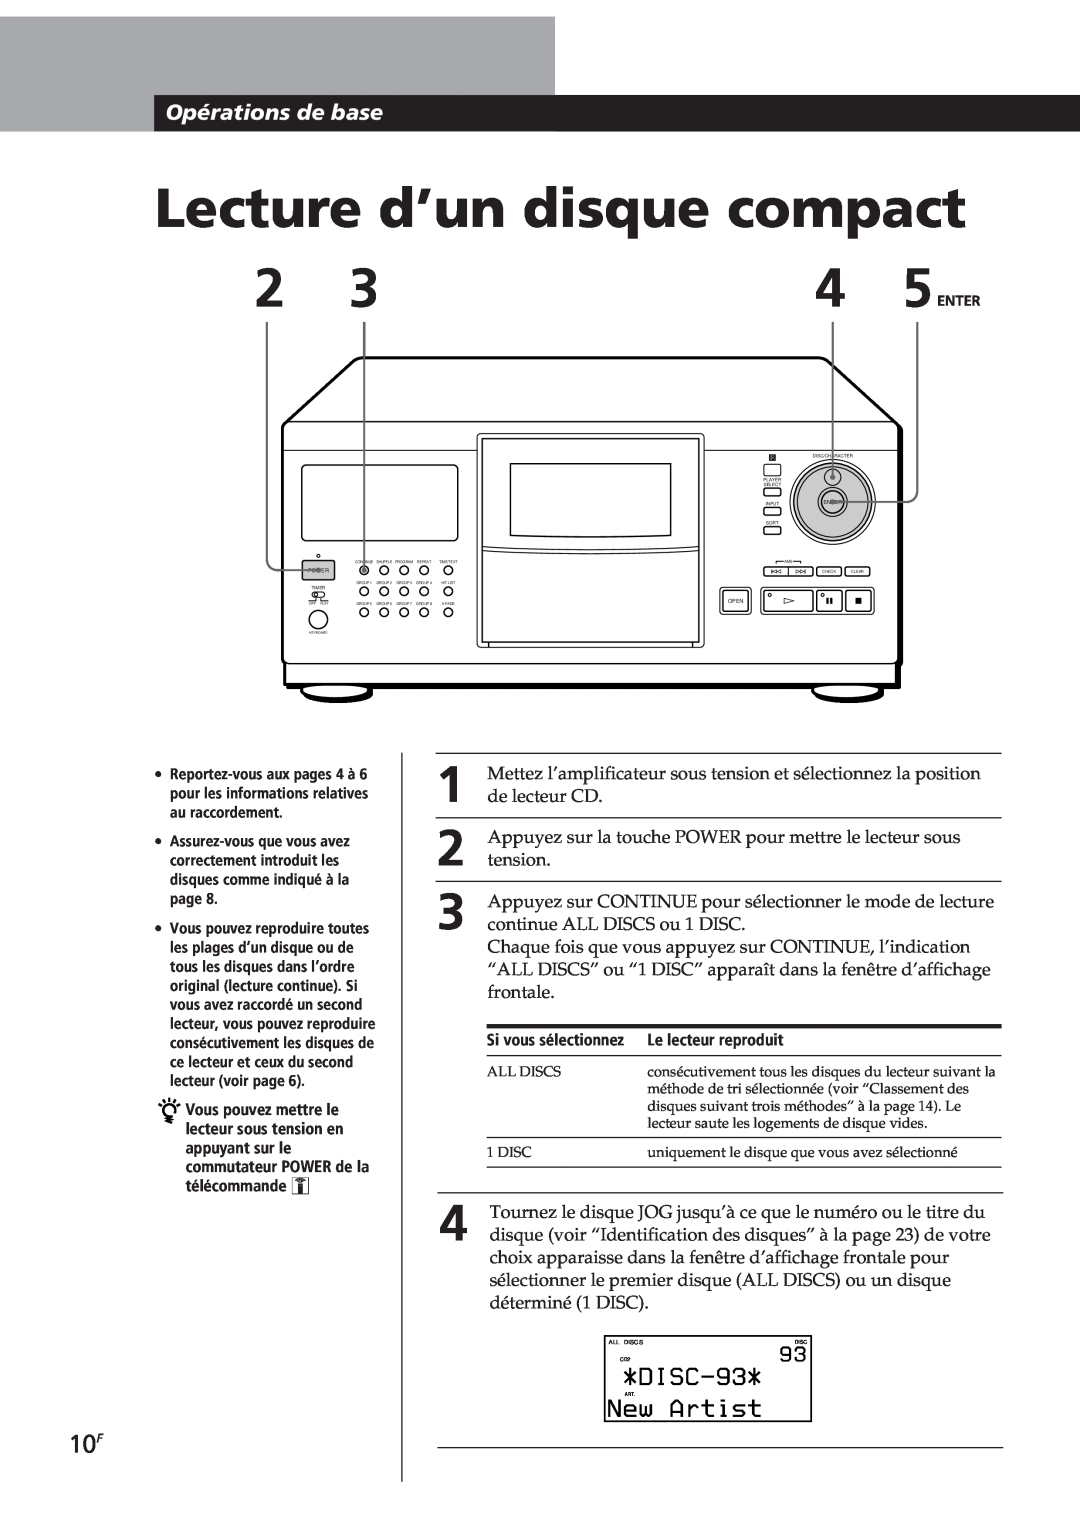 Sony CDP-CX270, CDP-CX90ES manual Lecture d’un disque compact, DISC-93, New Artist, Opérations de base 